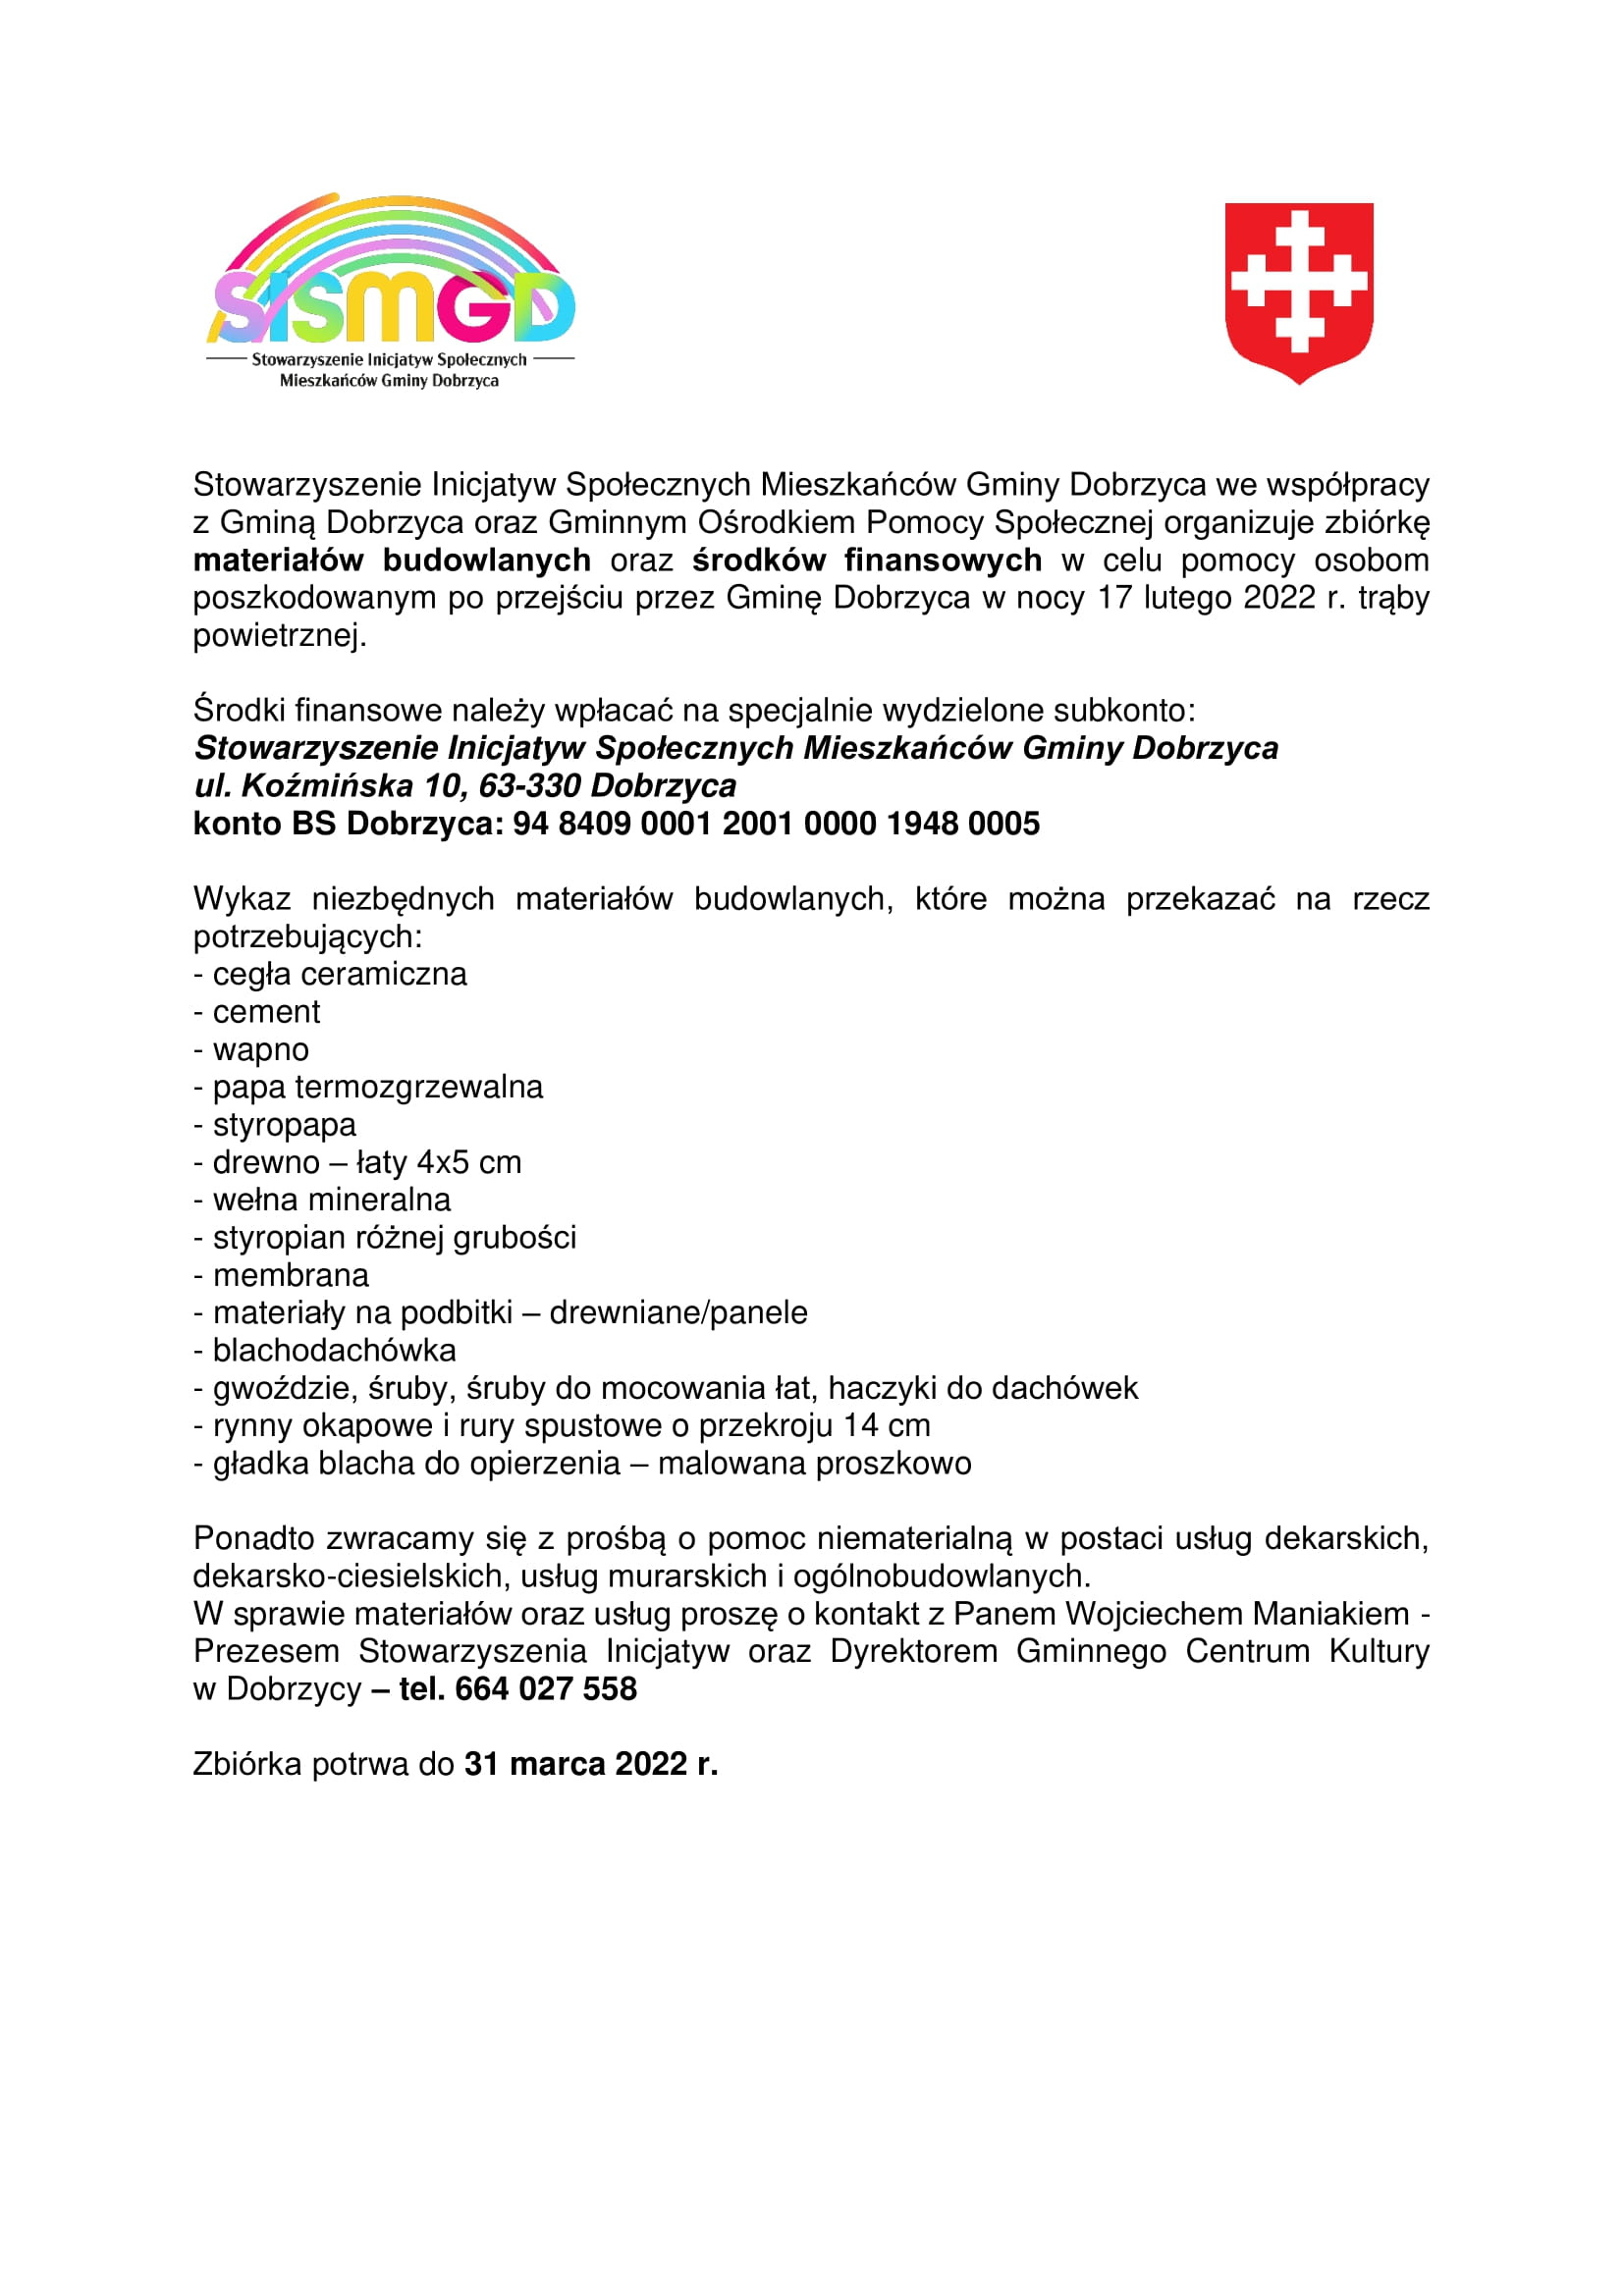 Informacja o zbiórce w celu pomocy osobom poszkodowanym po przejściu trąby powietrznej przez Gminę Dobrzyca w nocy 17 lutego 2022 r.